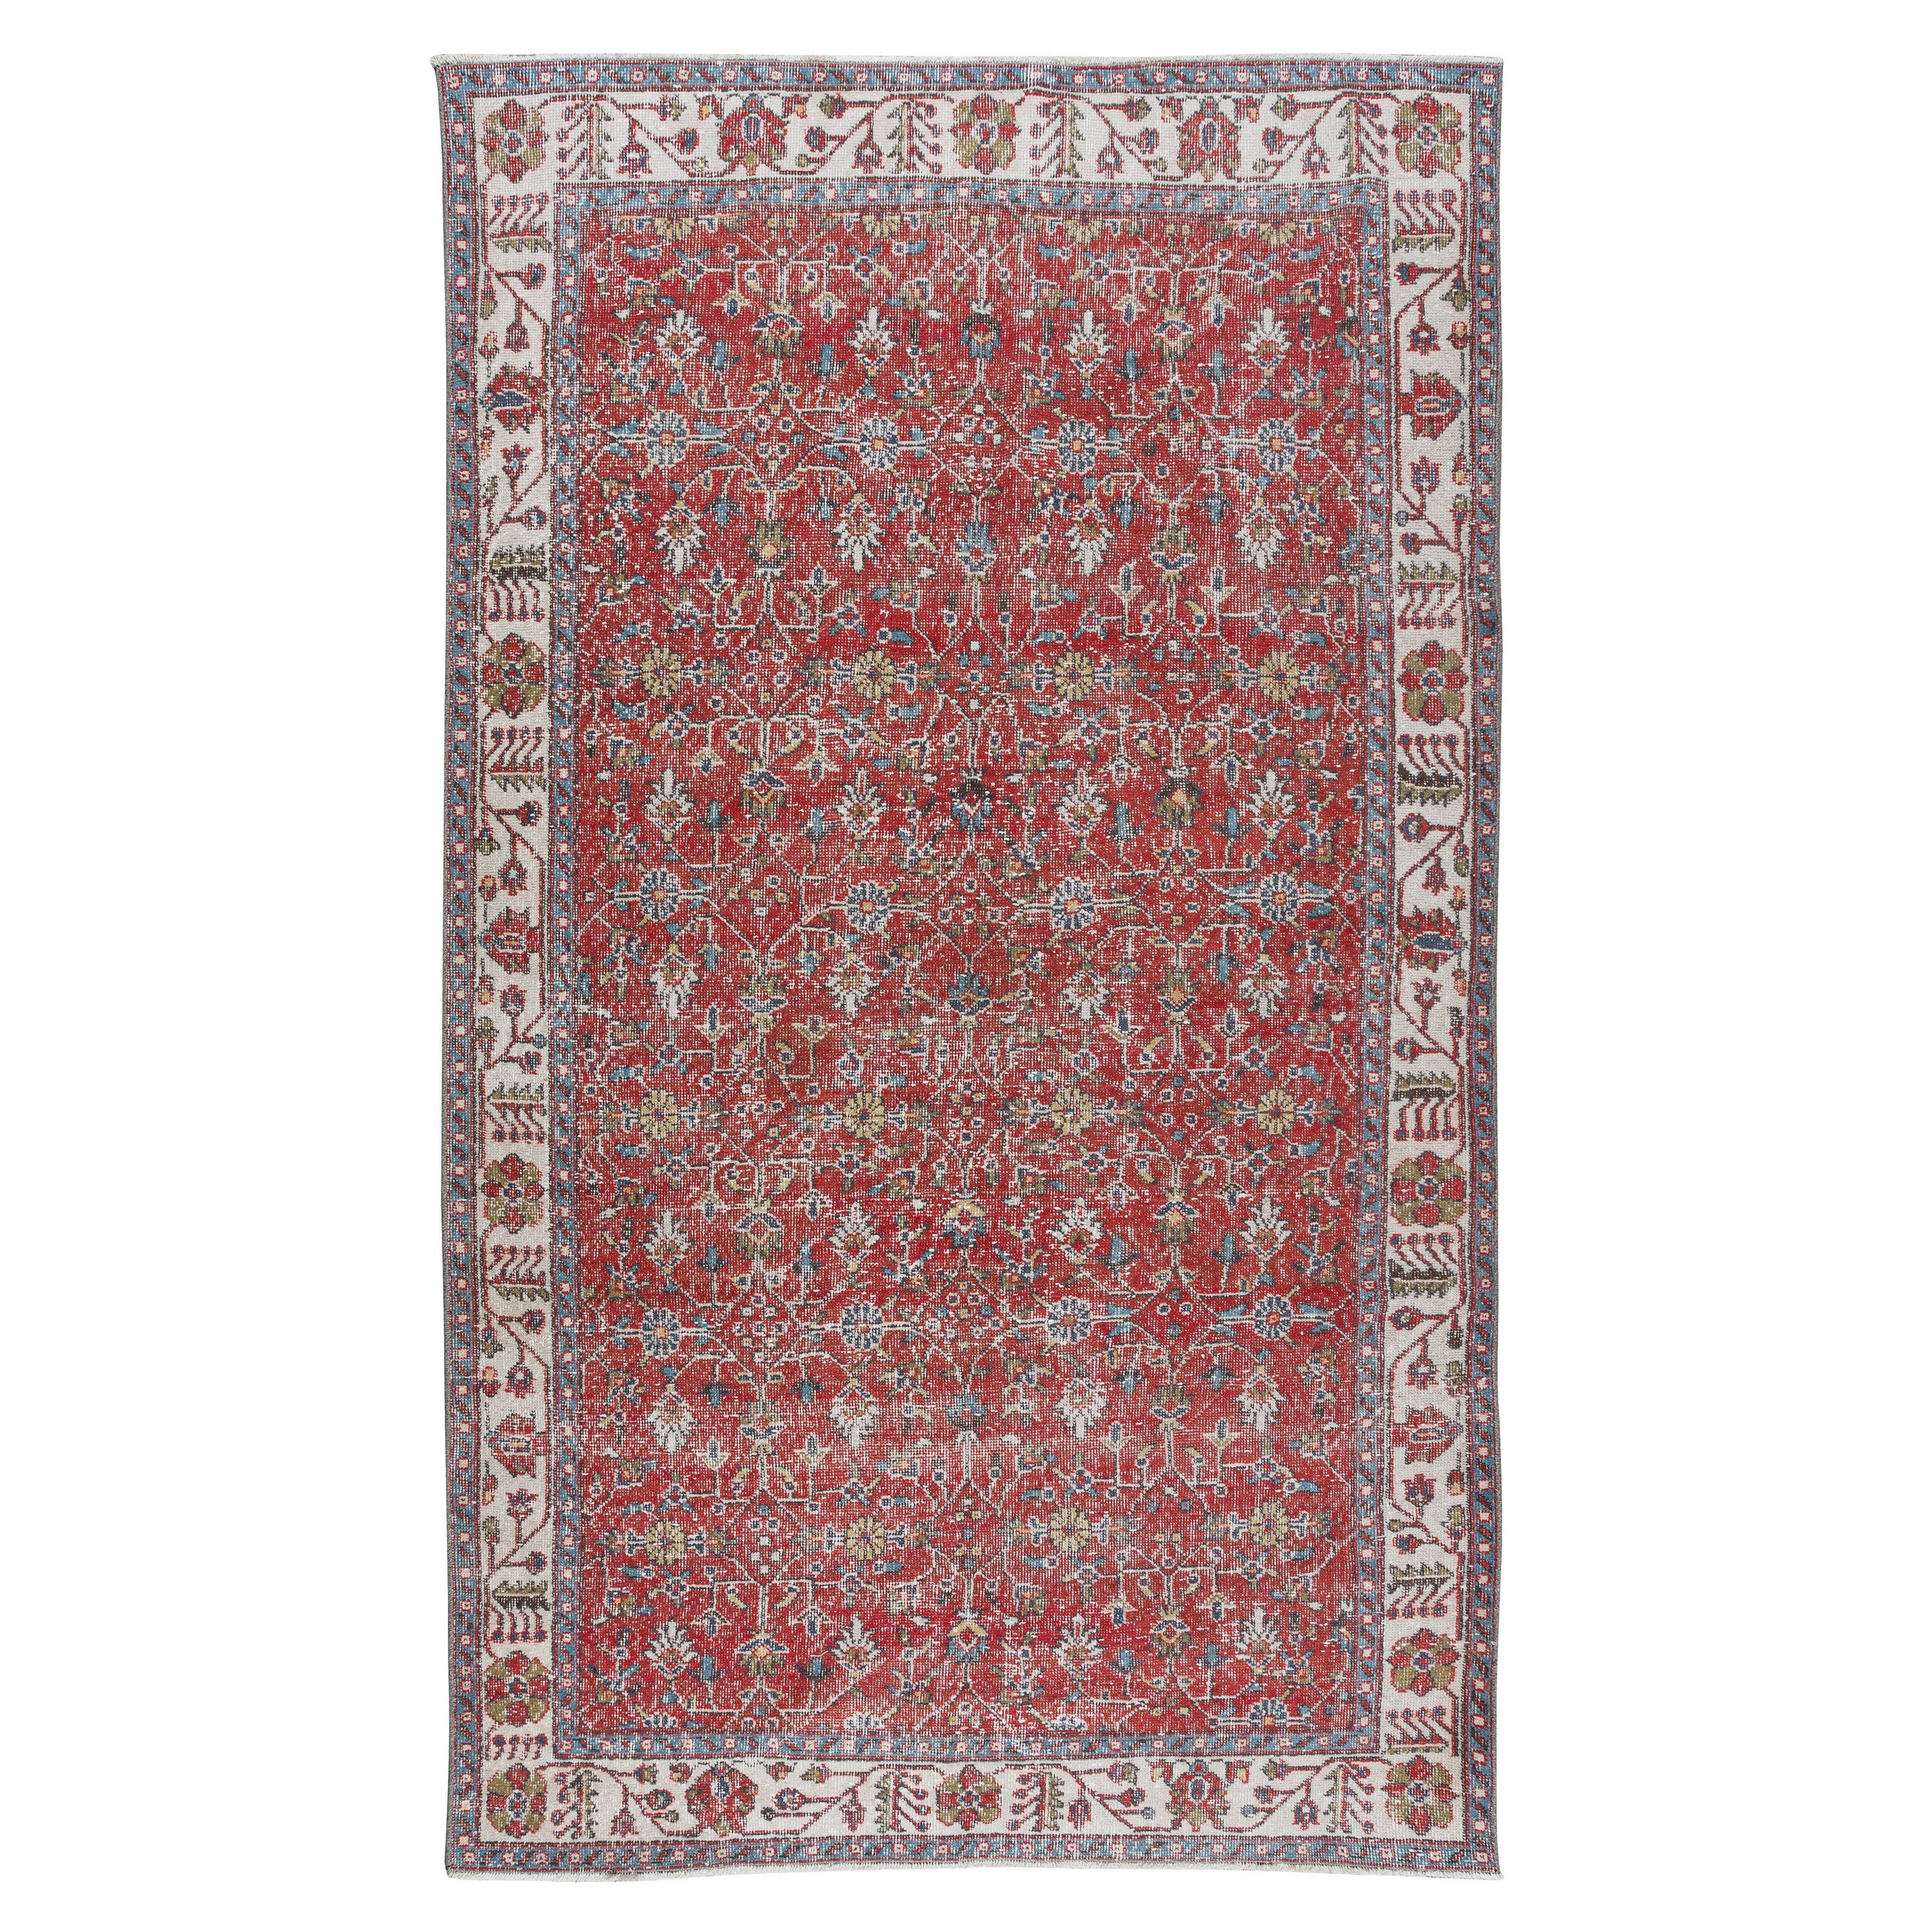 5.7x9.7 Ft Vintage Floral Anatolian Wool Area Rug in Red & Beige (Tapis de laine anatolienne nouée à la main)